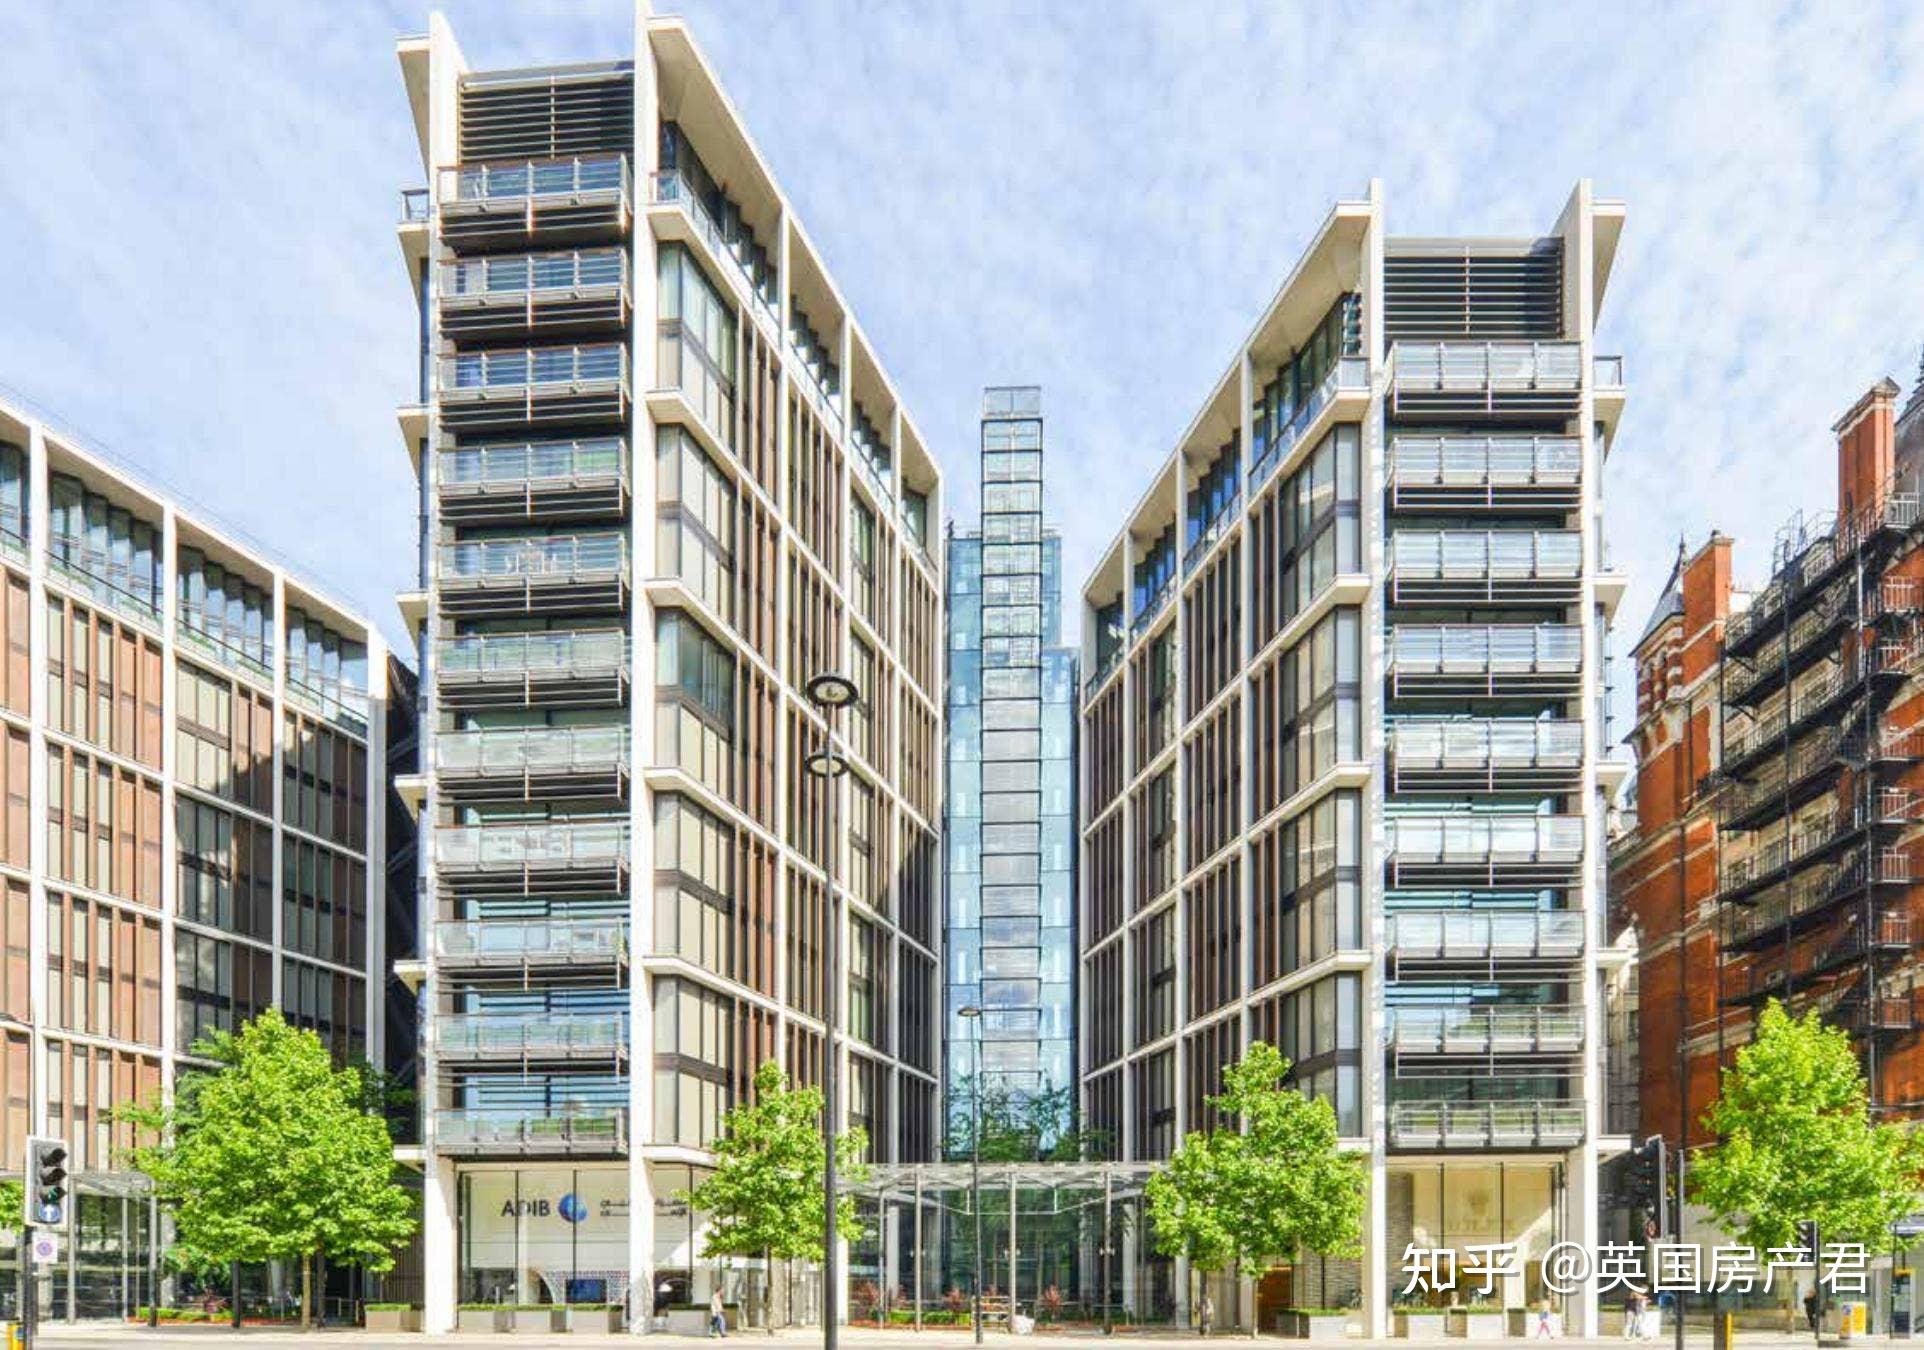 伦敦海德公园一号顶层公寓创今年单套房成交最